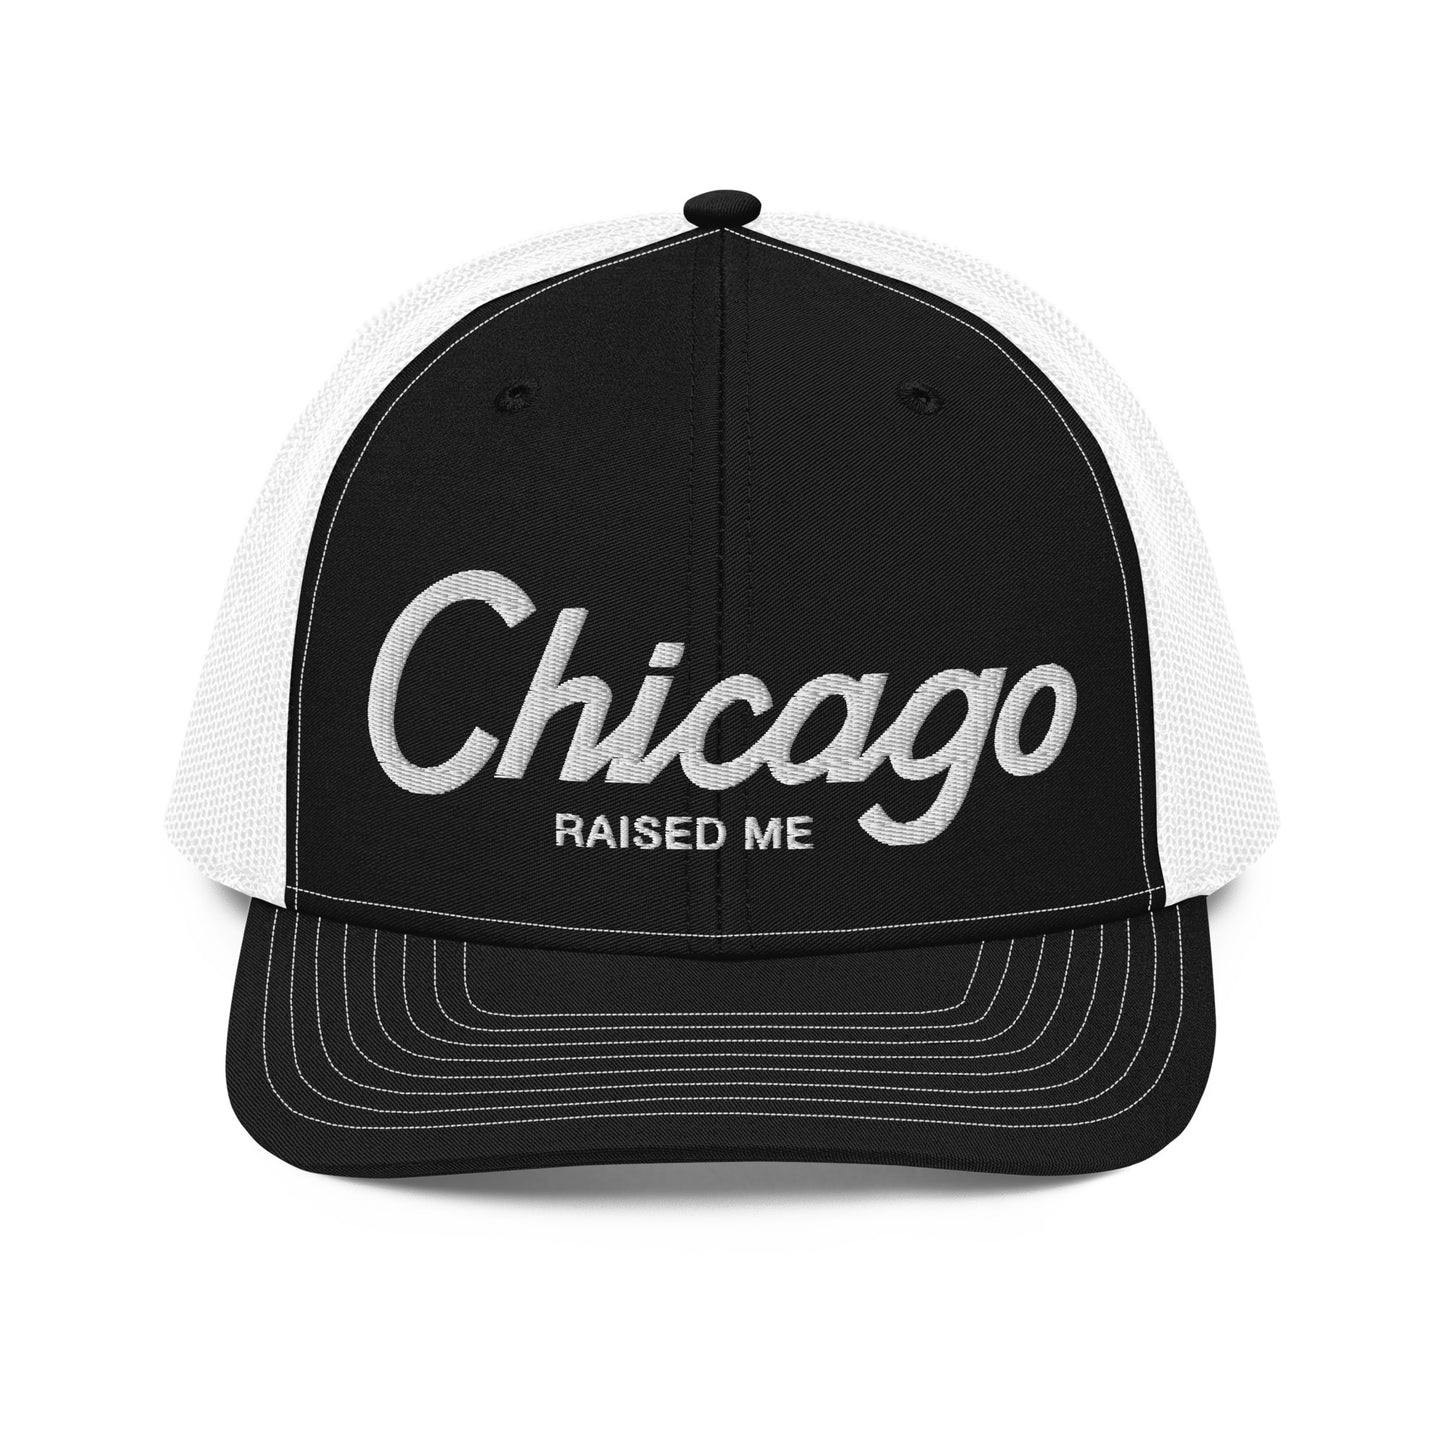 Chicago Raised Me Hat